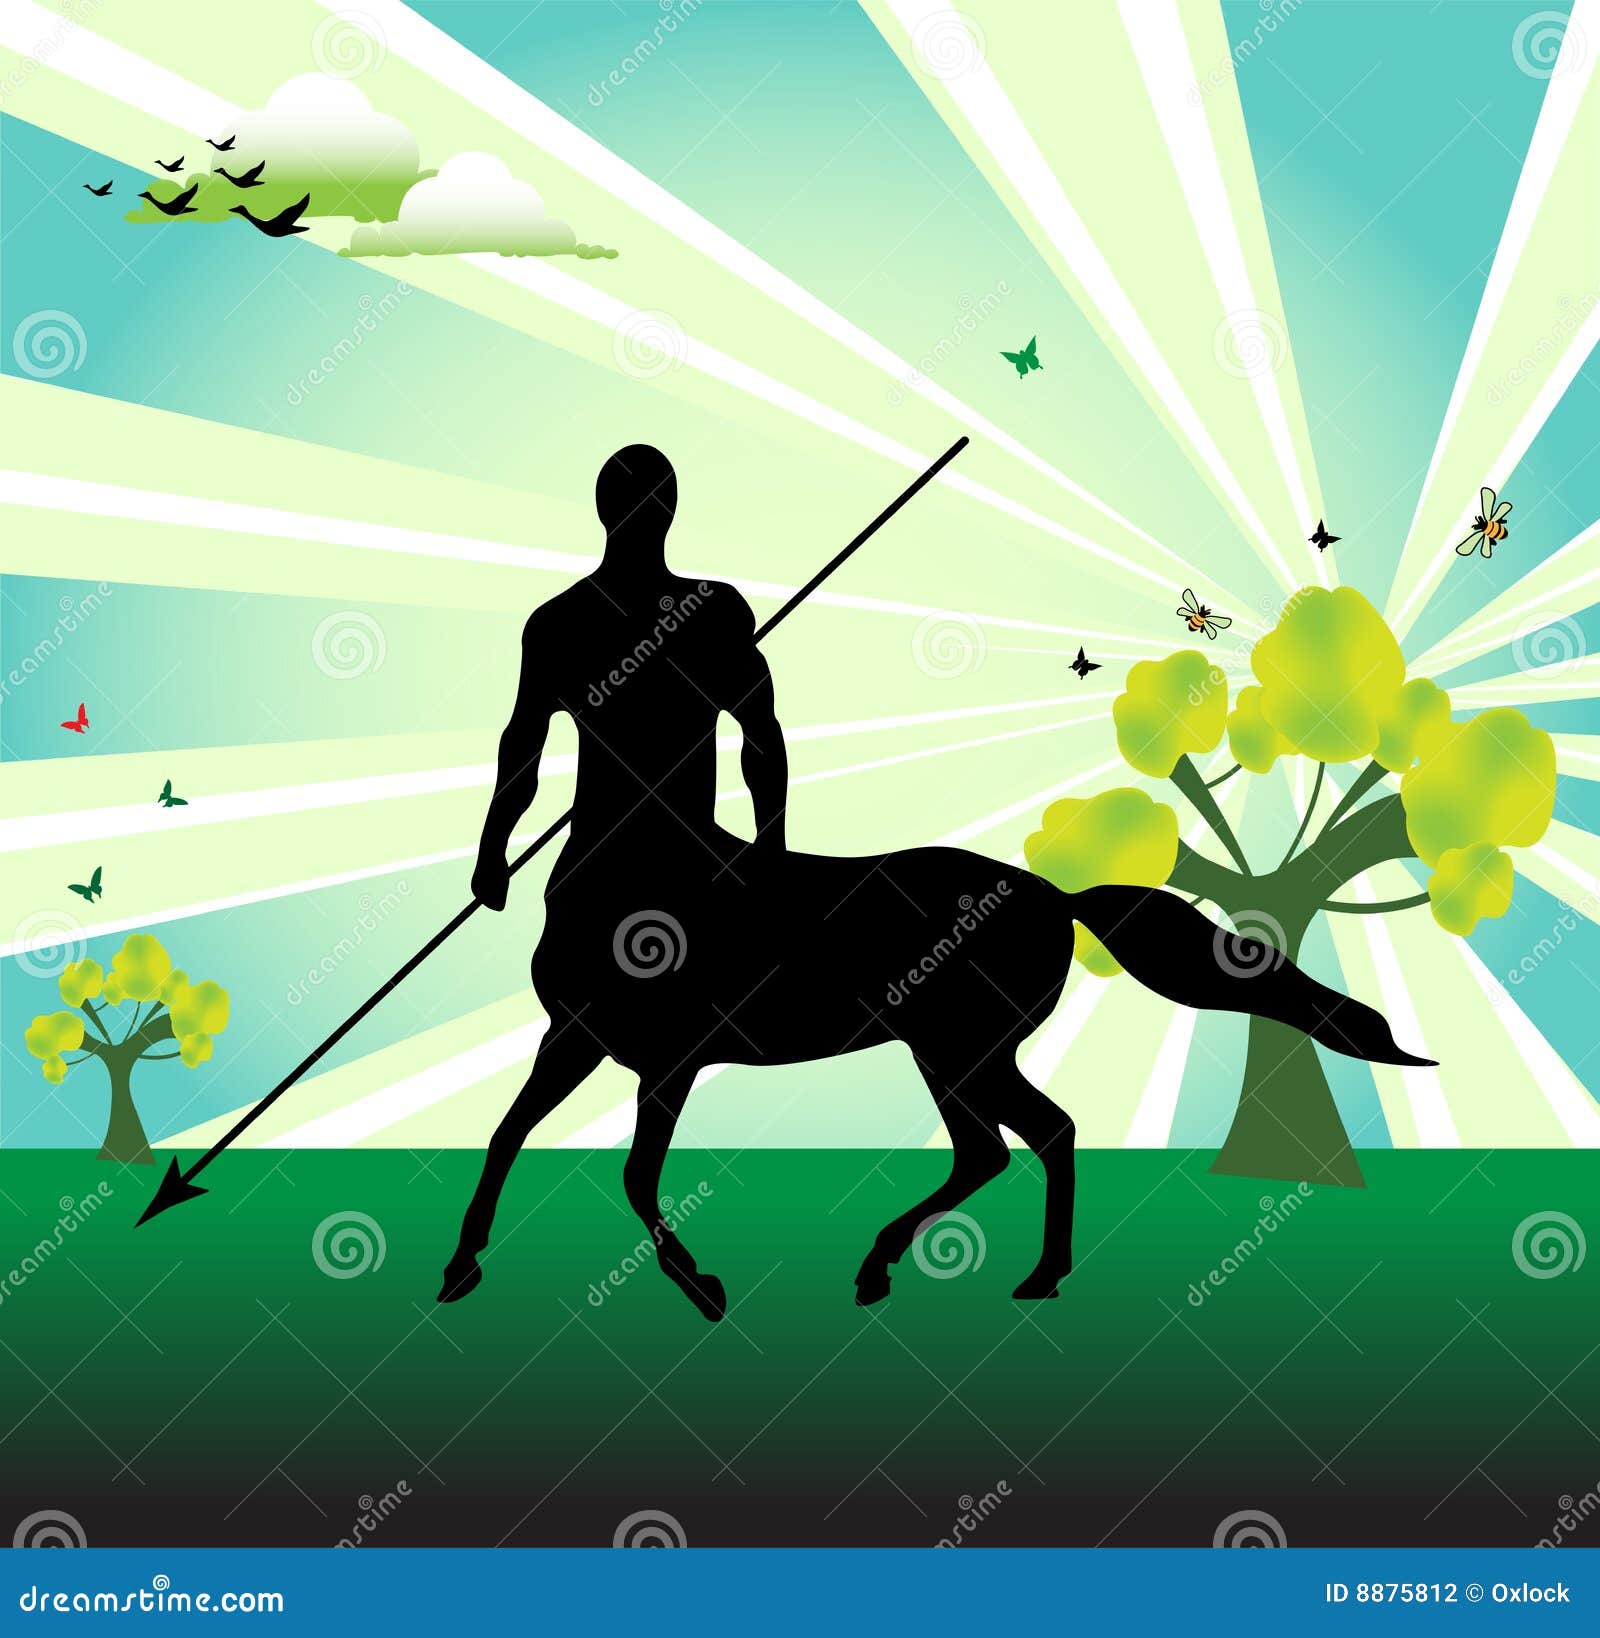 centaur with spear